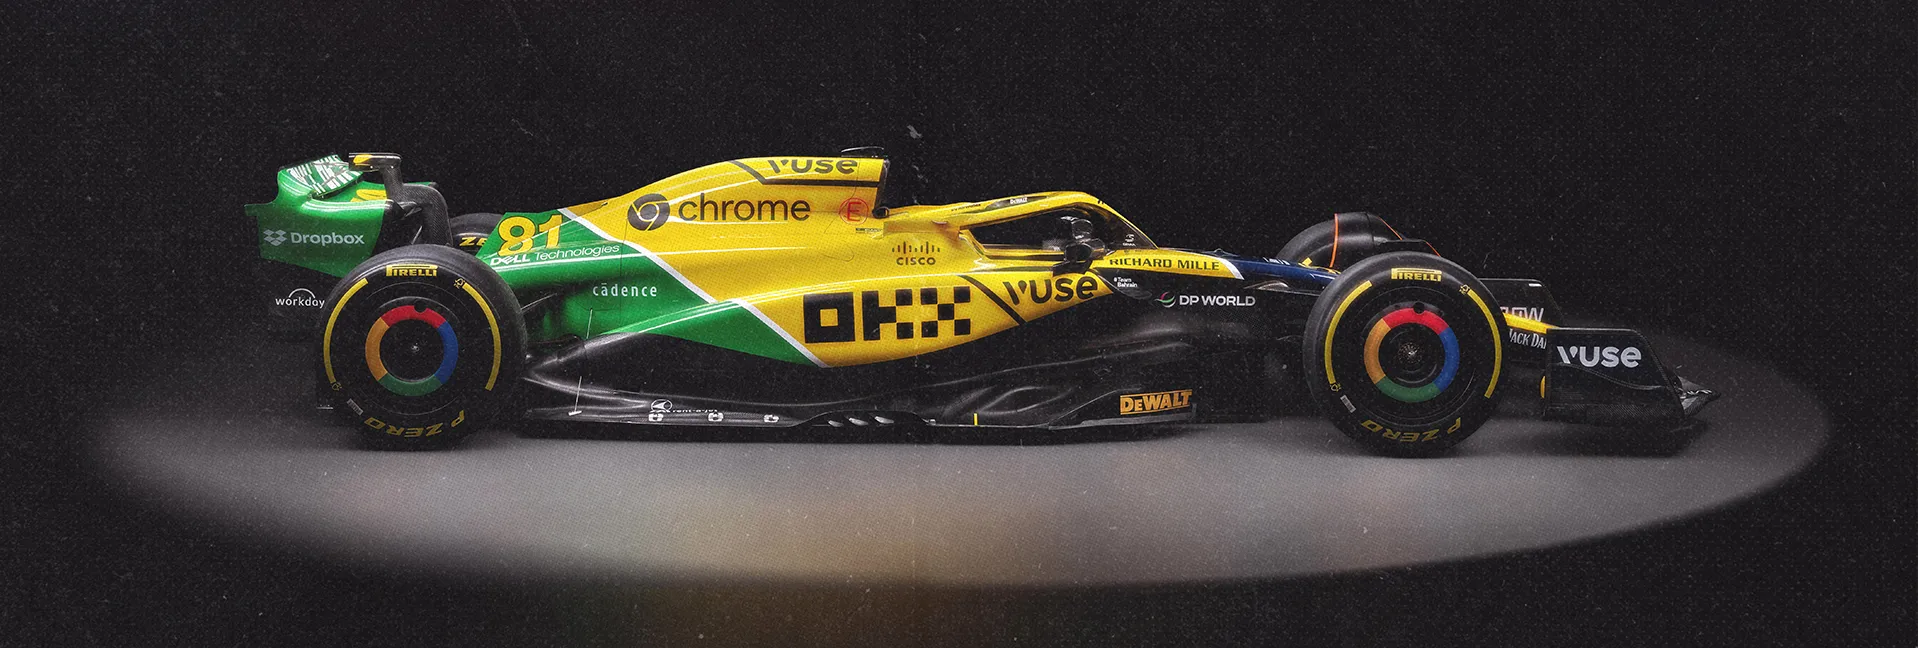 F1: McLaren apresenta pintura em homenagem a Senna para GP de Mônaco